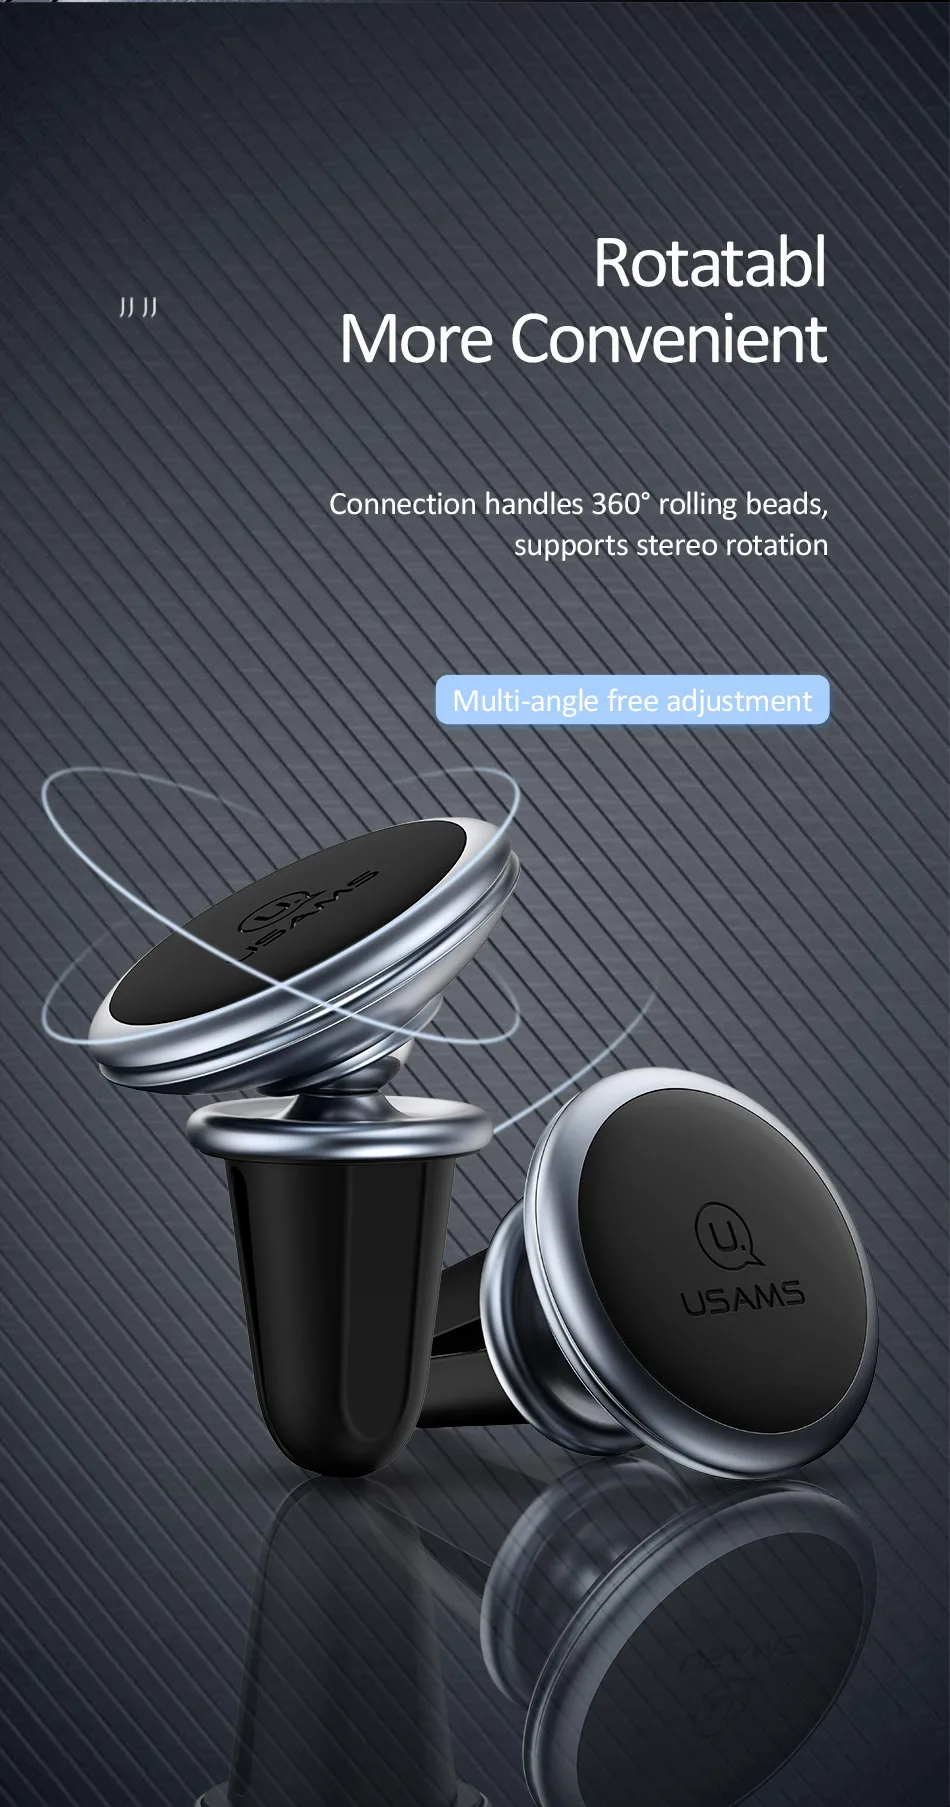 Универсальный магнитный автомобильный держатель для телефона USAMS для телефона на автомобильном магнитном вентиляционном отверстии стойка опора для мобильного телефона Xiaomi